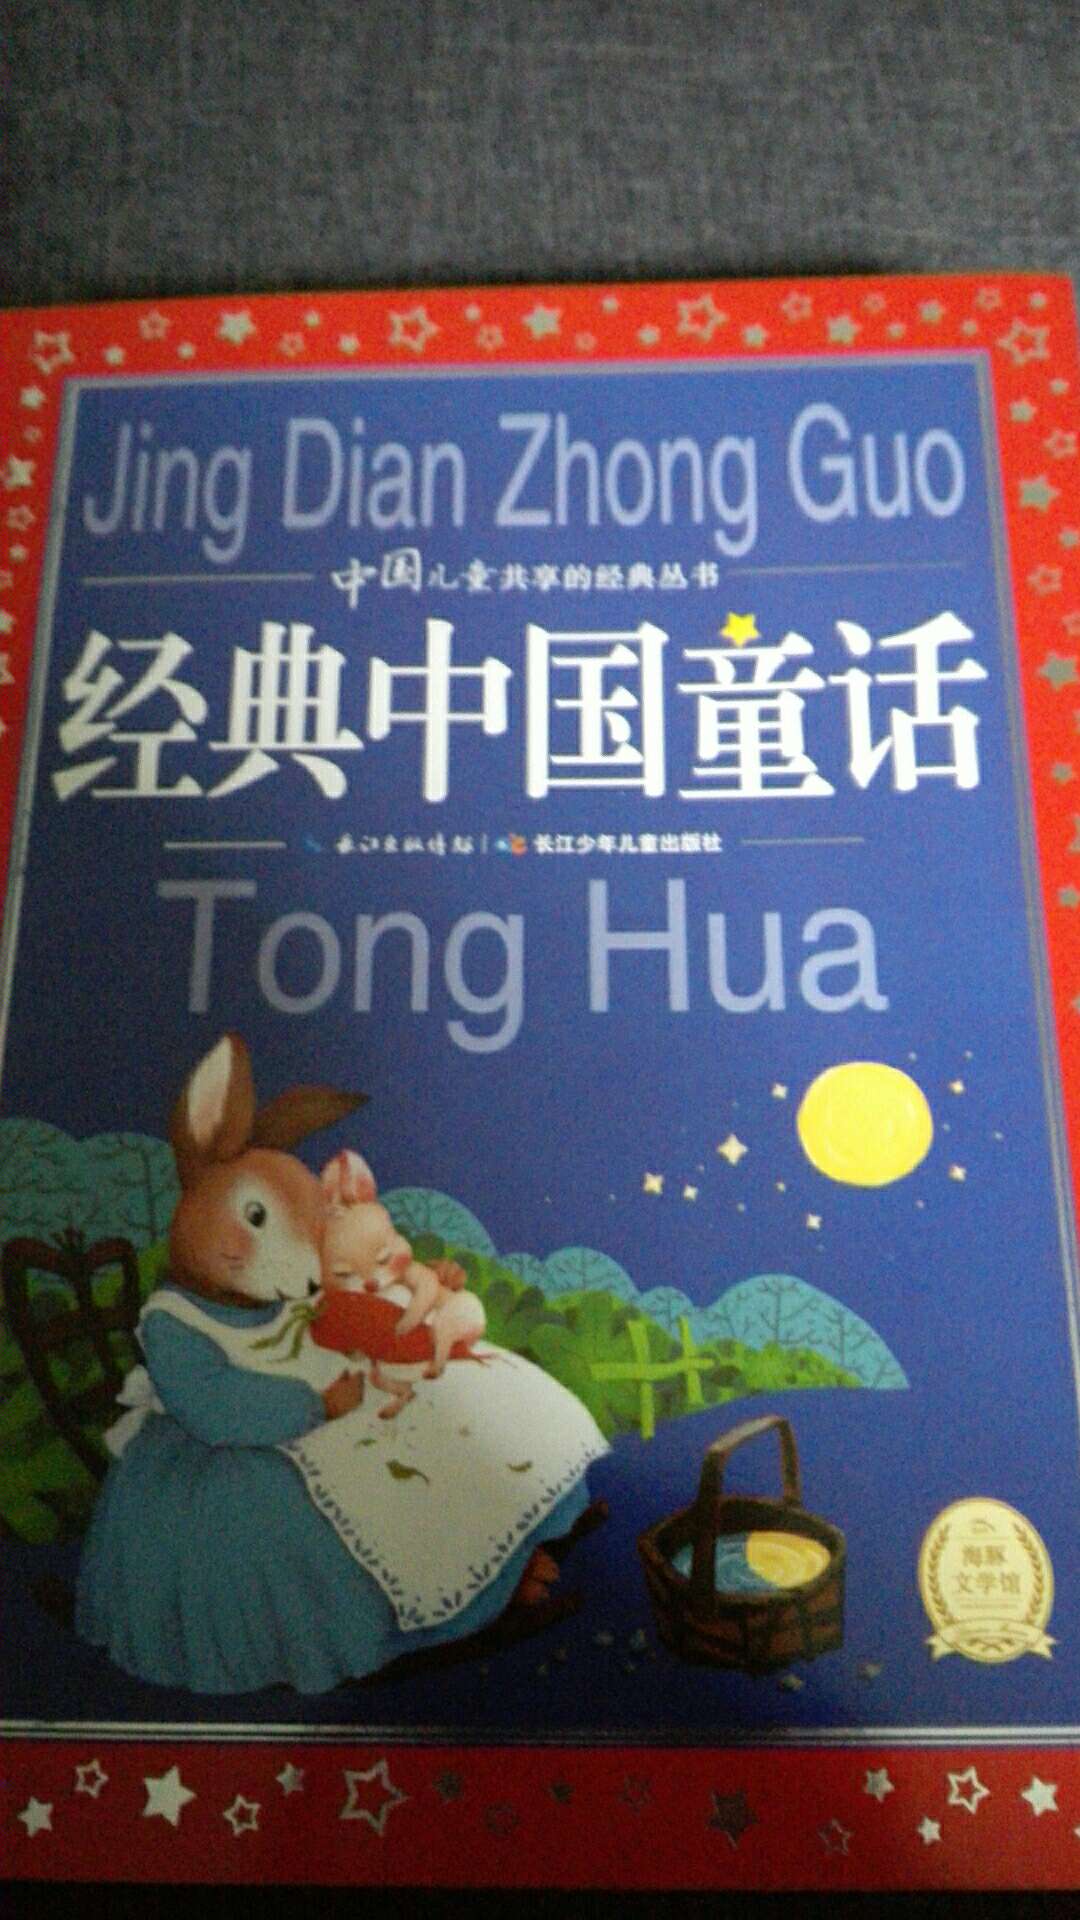 很喜欢这本经典中国童话书。纸质和画面都不错。